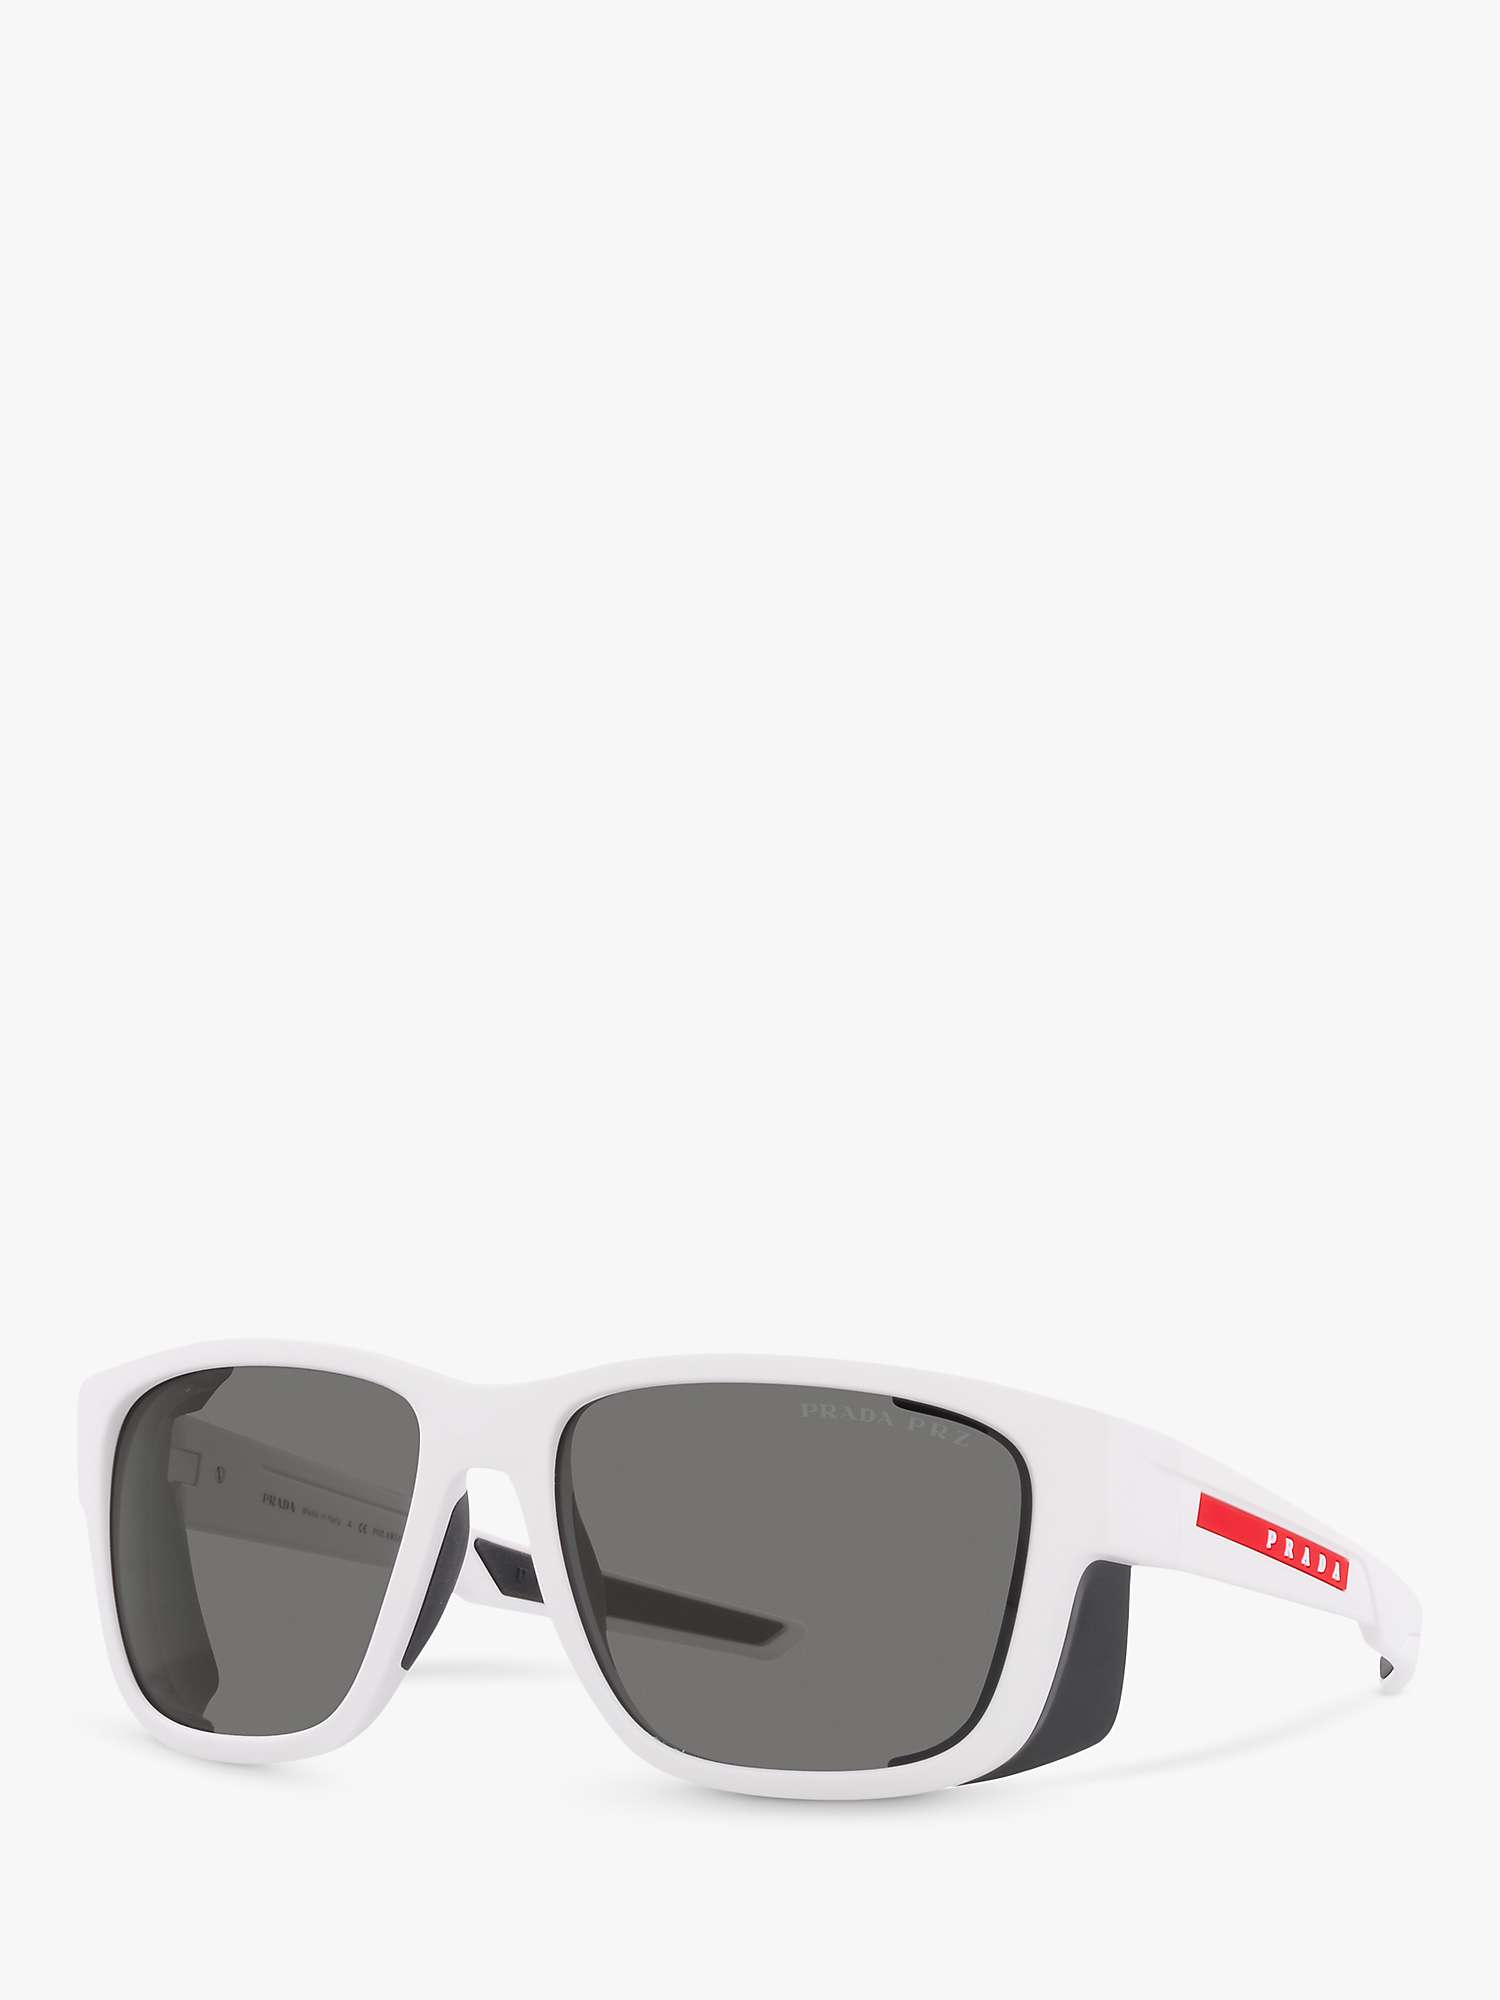 Prada Linea Rossa PS 07WS Men's Polarised Square Sunglasses, White